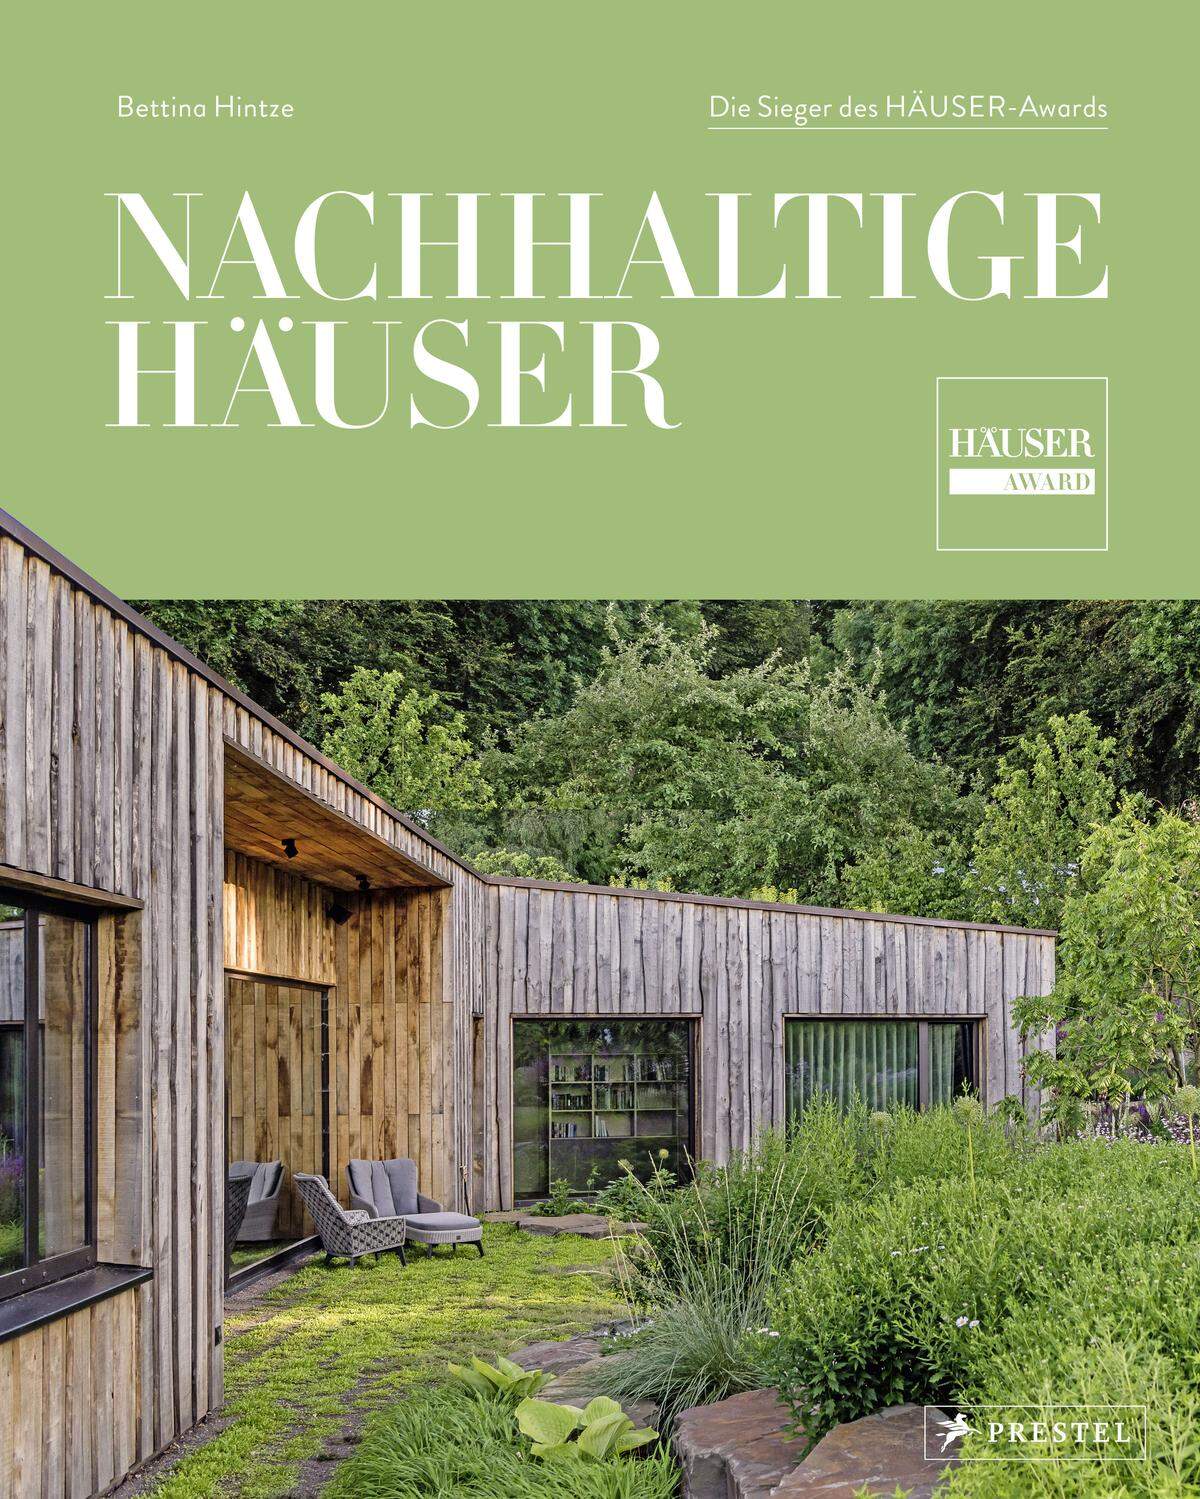 Mehr Informationen zum Wettbewerb gibt es im neuen Buch „Nachhaltige Häuser – zeitgemäß und zukunftsfähig“, erschienen bei Prestel, München sowie in der aktuellen Ausgabe von HÄUSER 02/2021. www.haeuser-award.de/